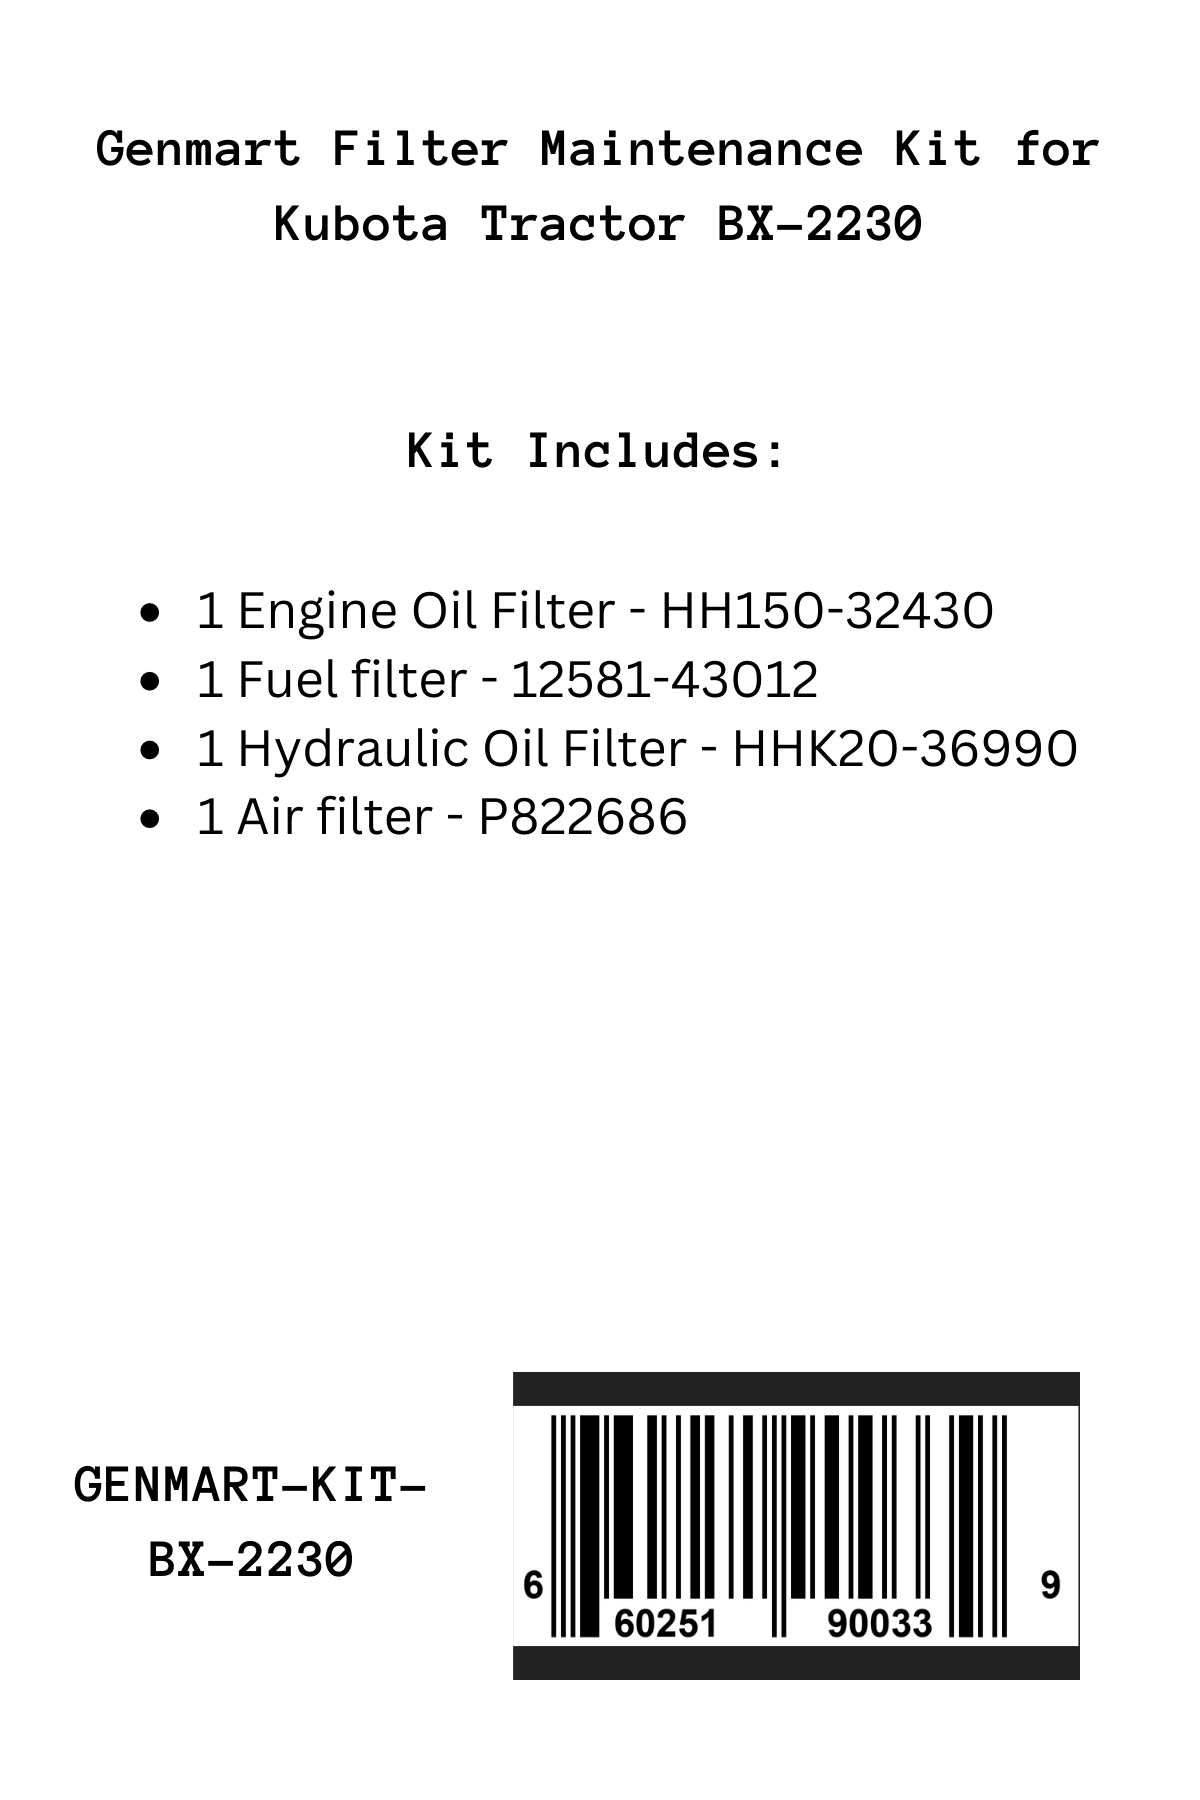 Genmart maintenance Kit for Kubota Tractor BX-2230